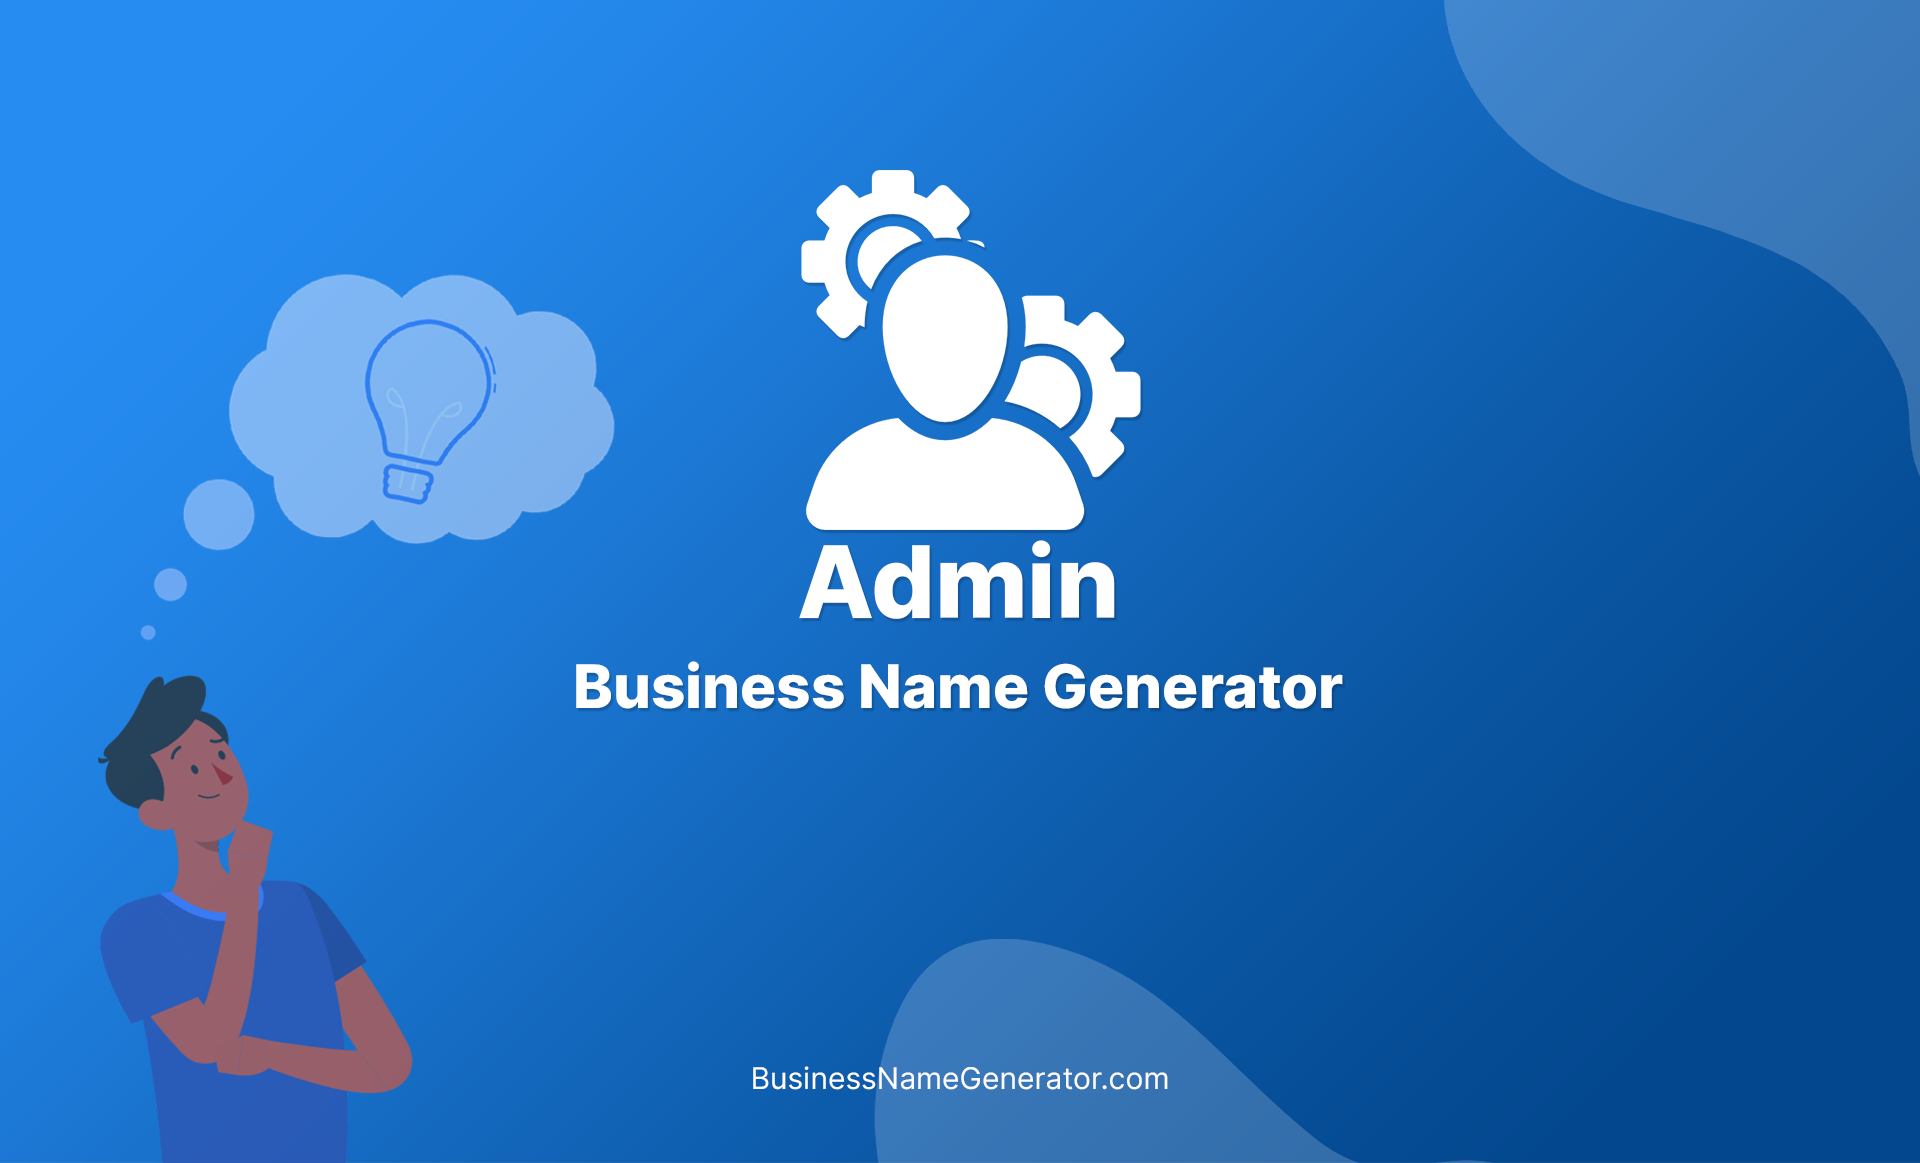 Admin Business Name Generator